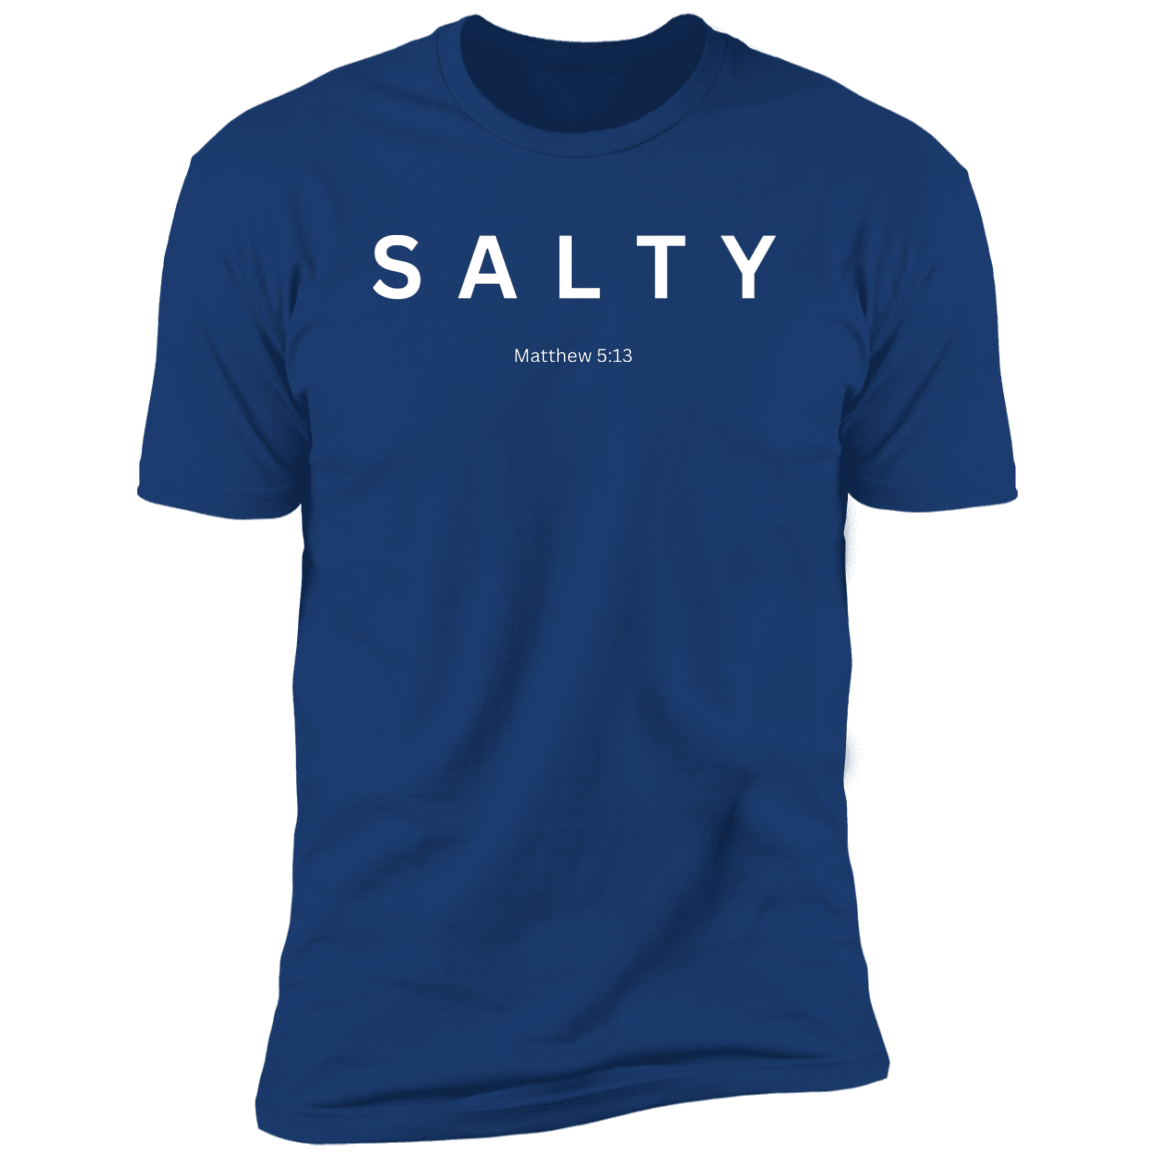 Salty Premium Short Sleeve T-Shirt white lettering